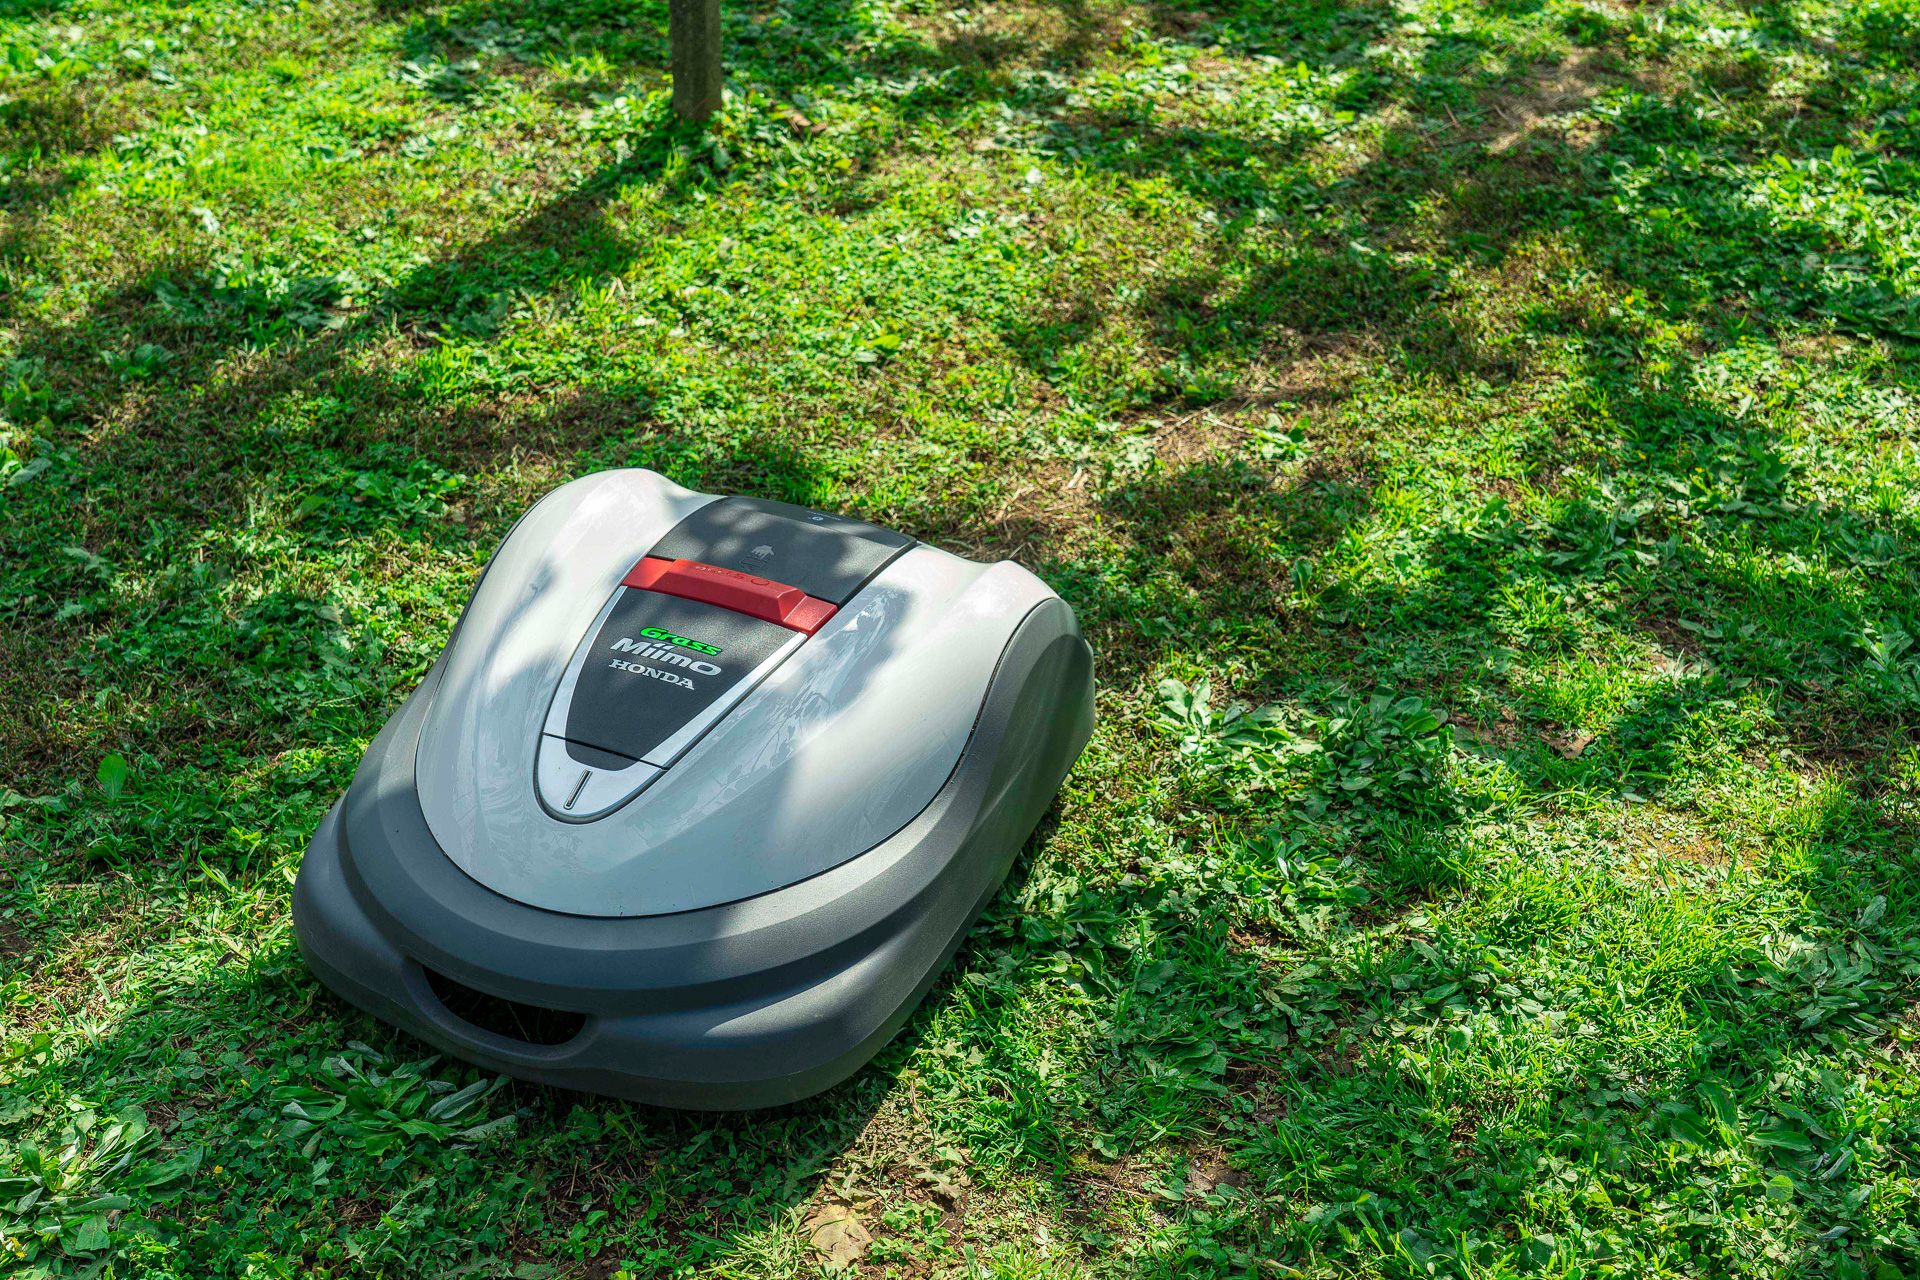 ホンダ 今夏に発売予定のロボット草刈機 Grass Miimo グラスミーモ を先行公開 Car Watch